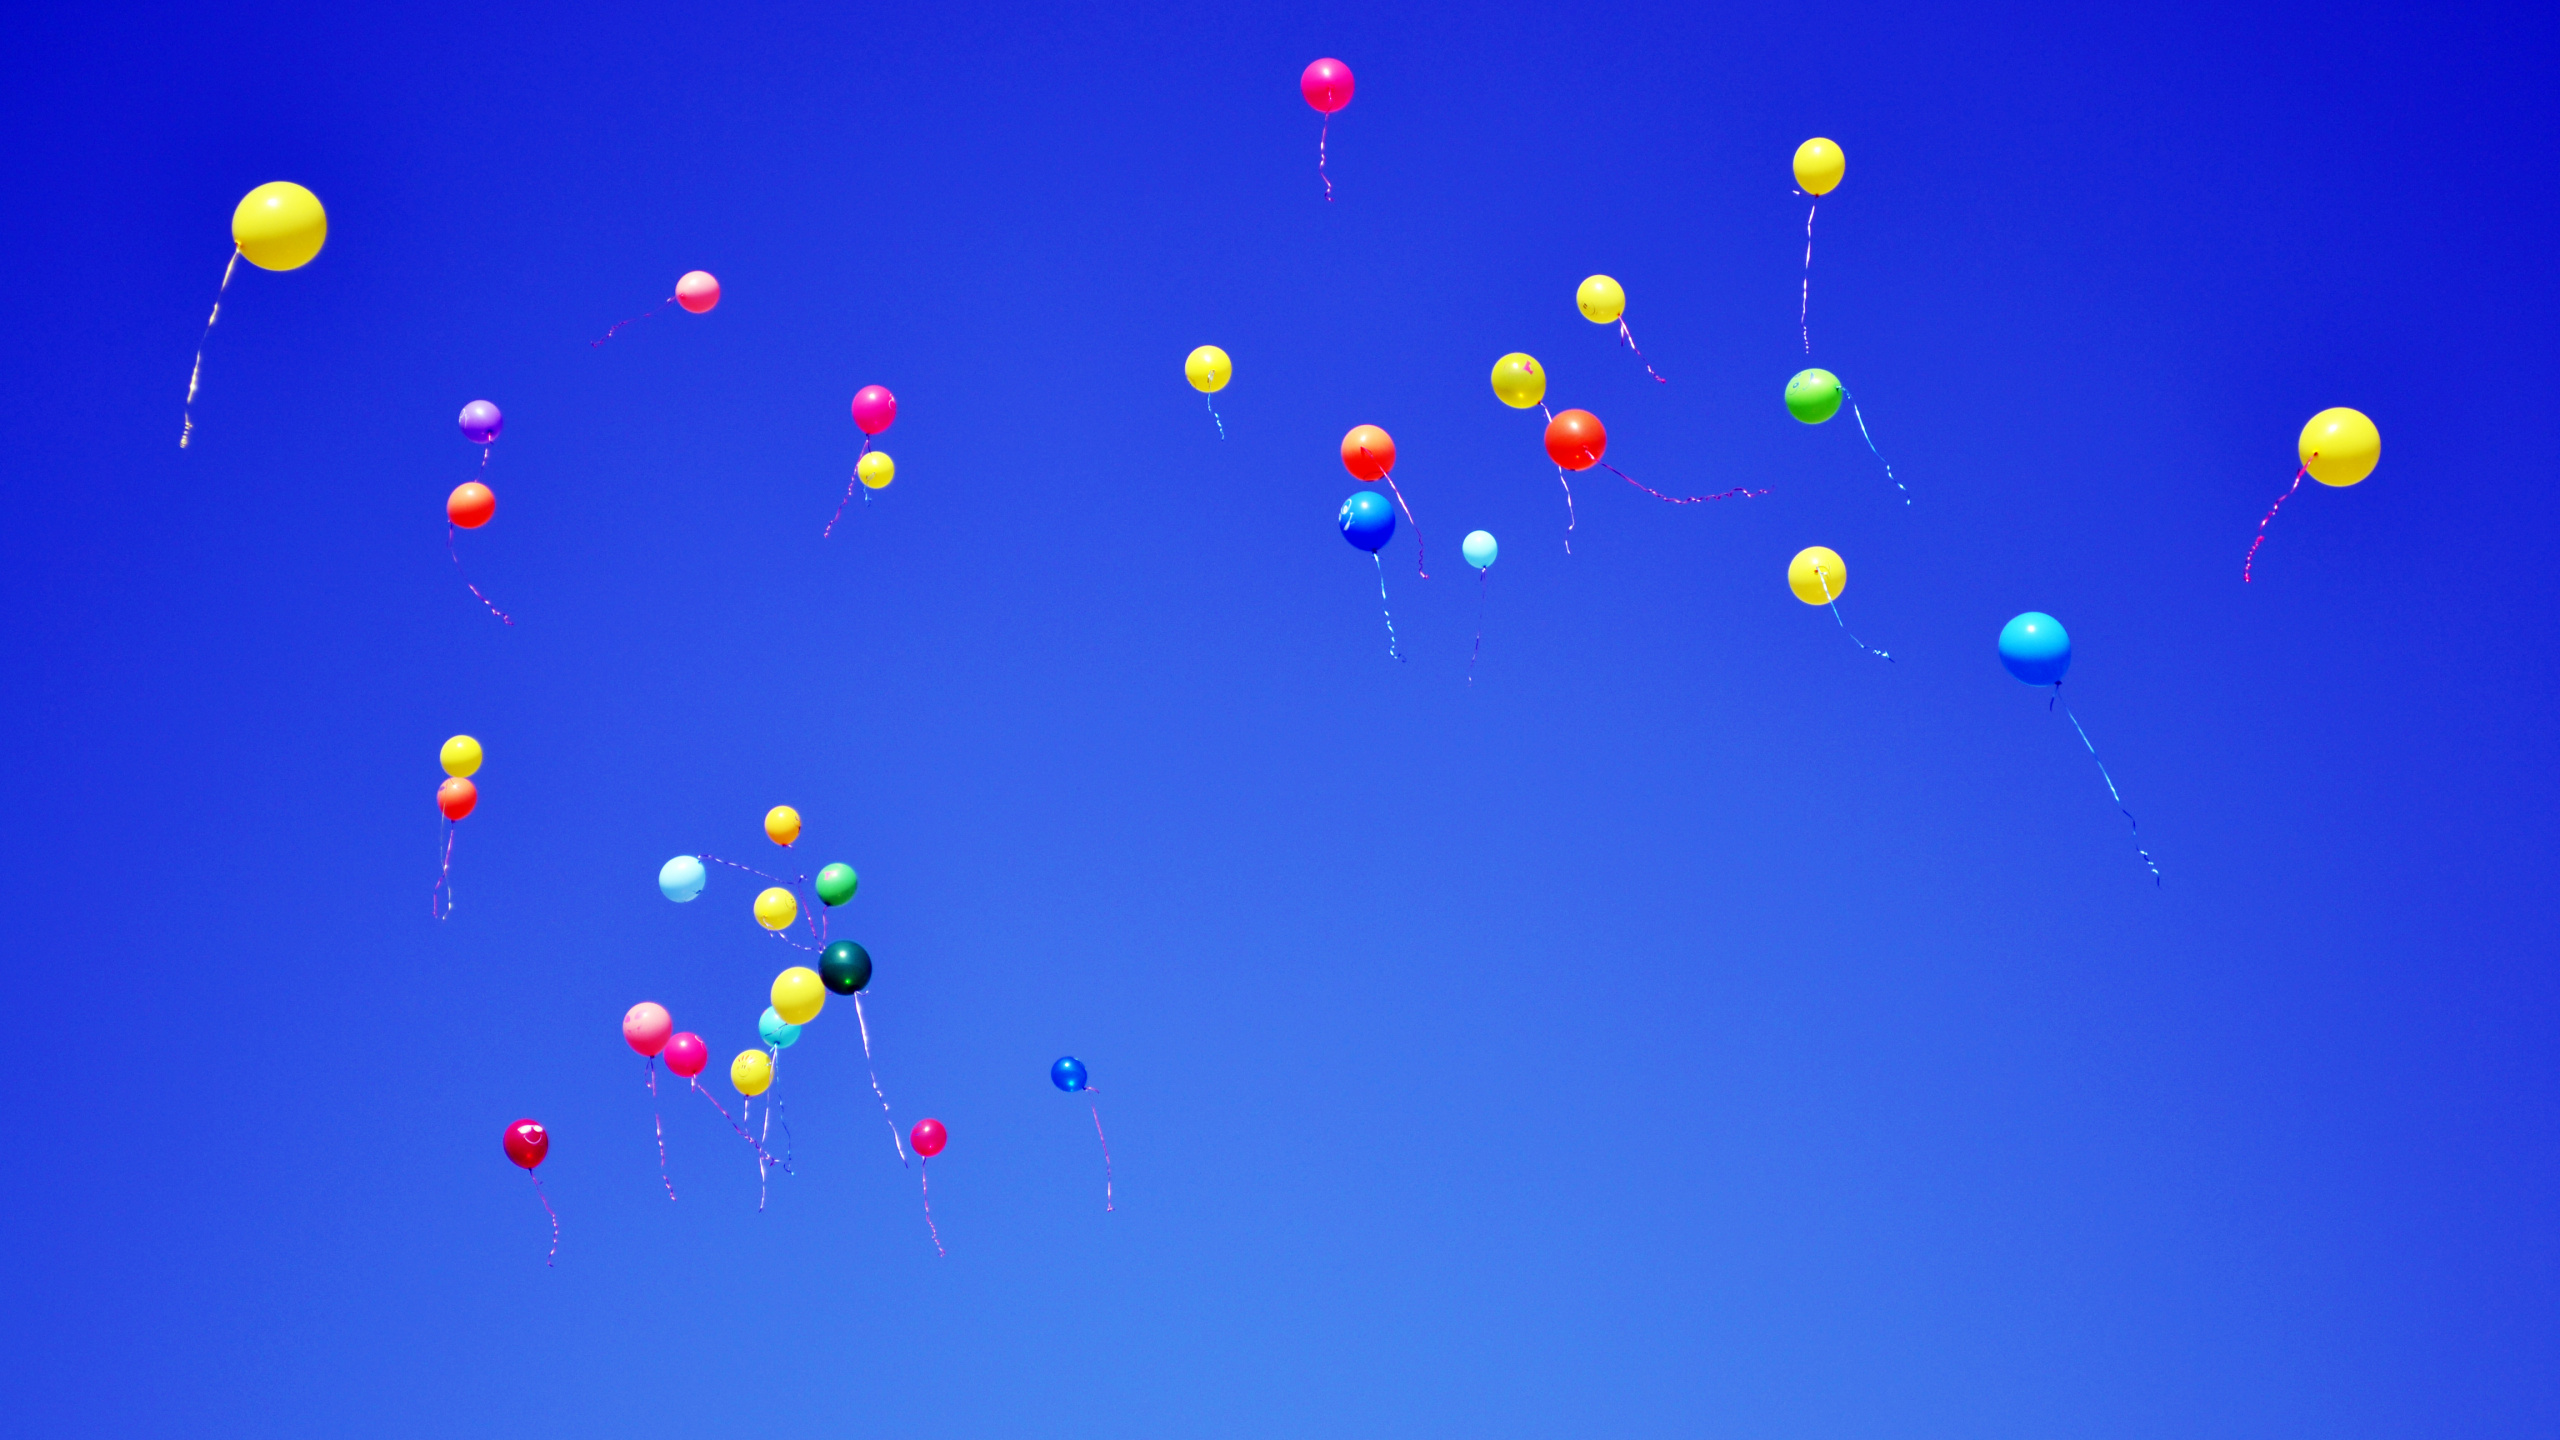 Ballons Rouges Bleus et Jaunes Dans le Ciel. Wallpaper in 2560x1440 Resolution